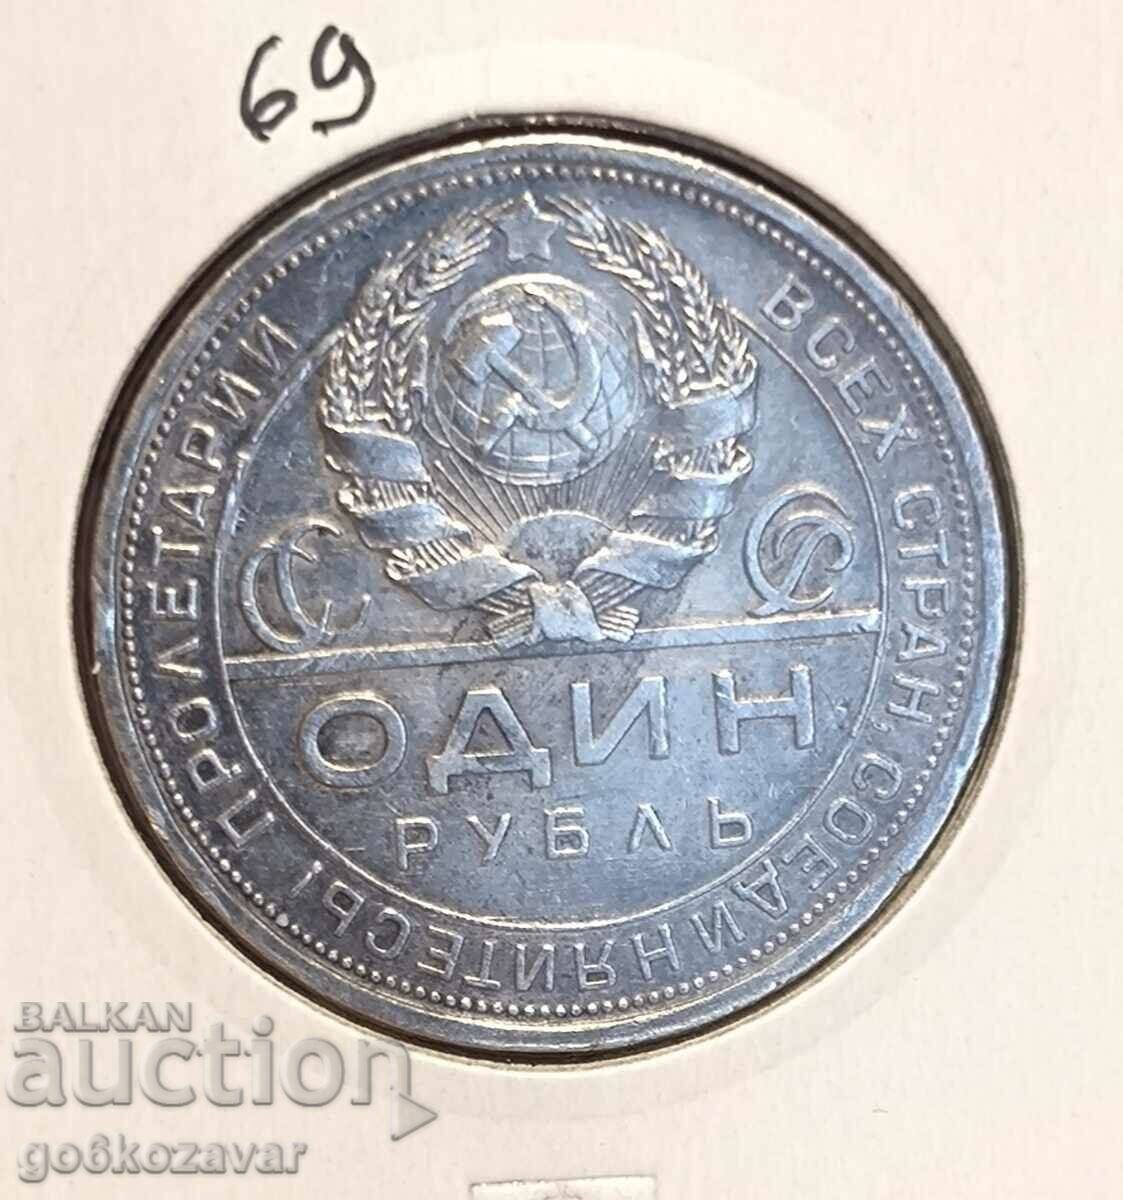 Ρωσία 1 ρούβλι ασήμι 1924! Κορυφαίο νόμισμα!